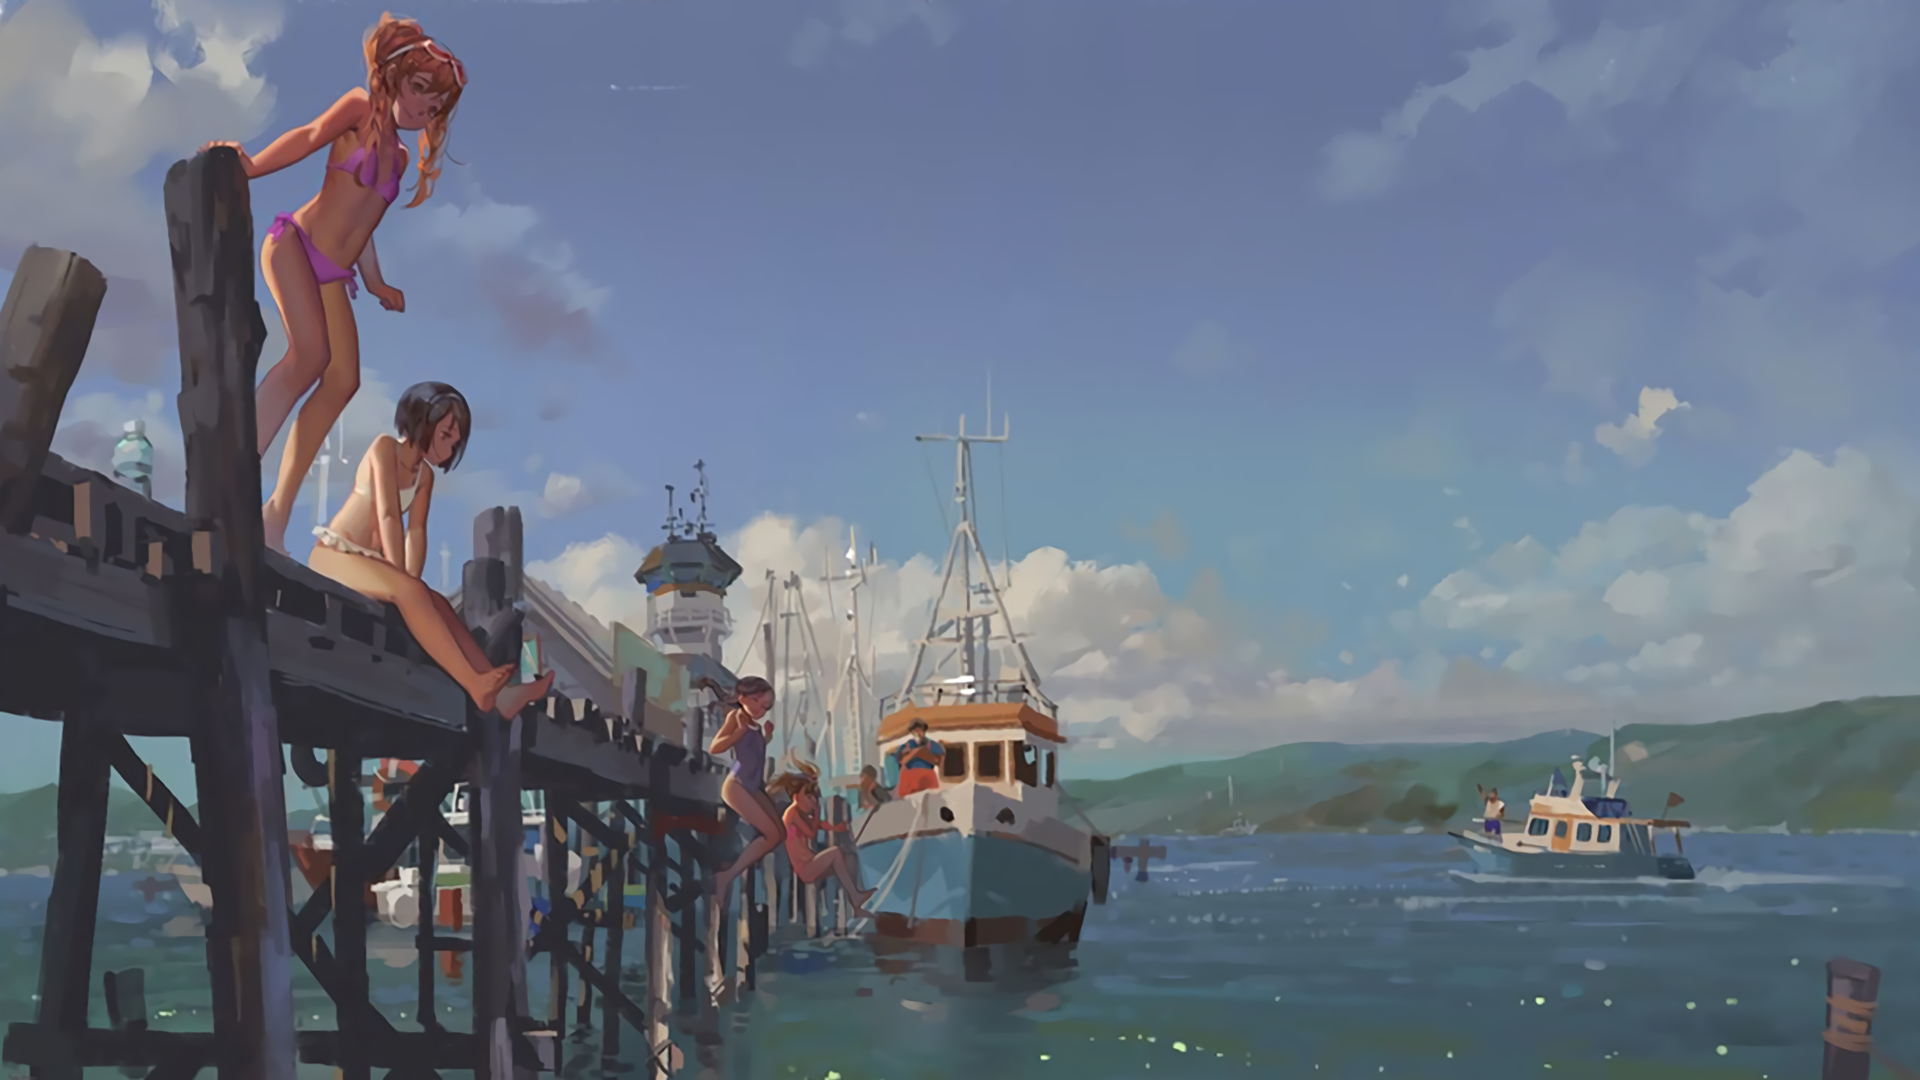 Anime Girls Sea Summer Sky Harbor Wallpaper:1920x1080